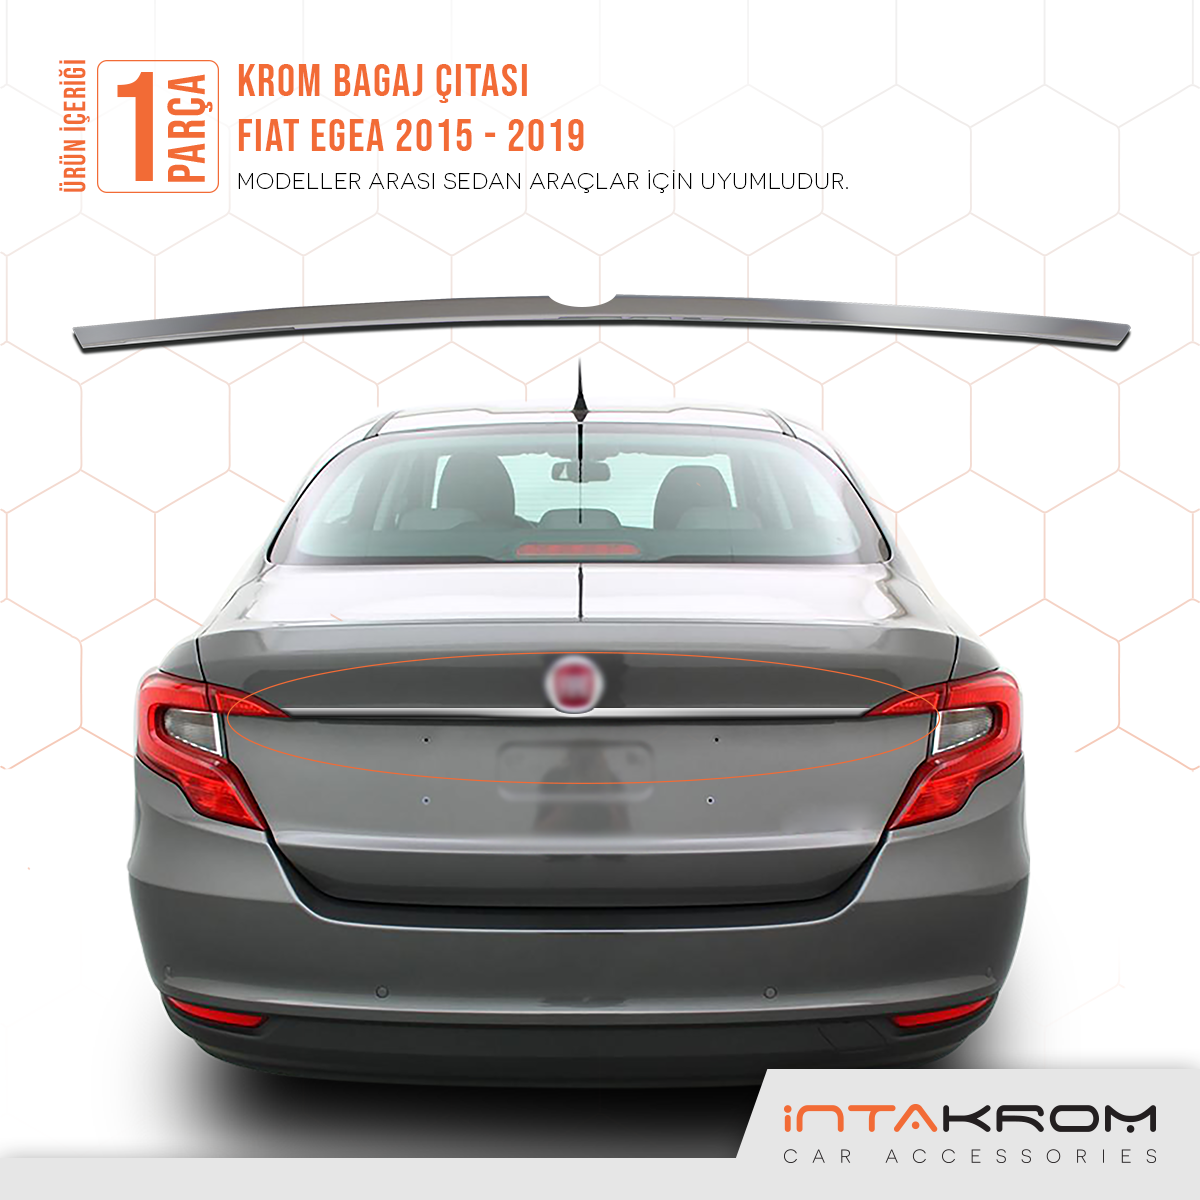 intakrom Fiat Egea Krom Bagaj Çıtası 2015 Üzeri Sedan